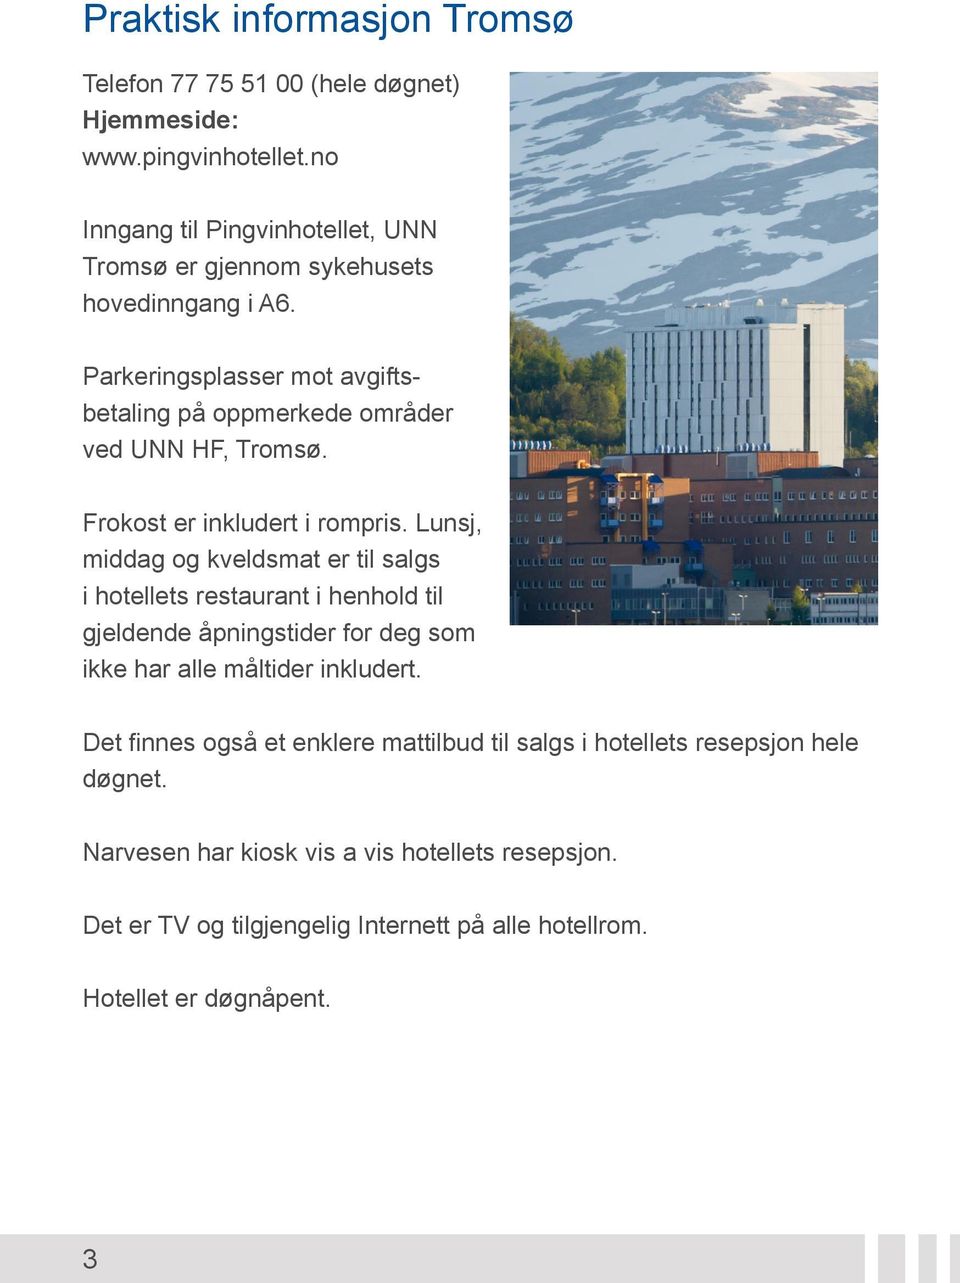 Parkeringsplasser mot avgiftsbetaling på oppmerkede områder ved UNN HF, Tromsø. Frokost er inkludert i rompris.